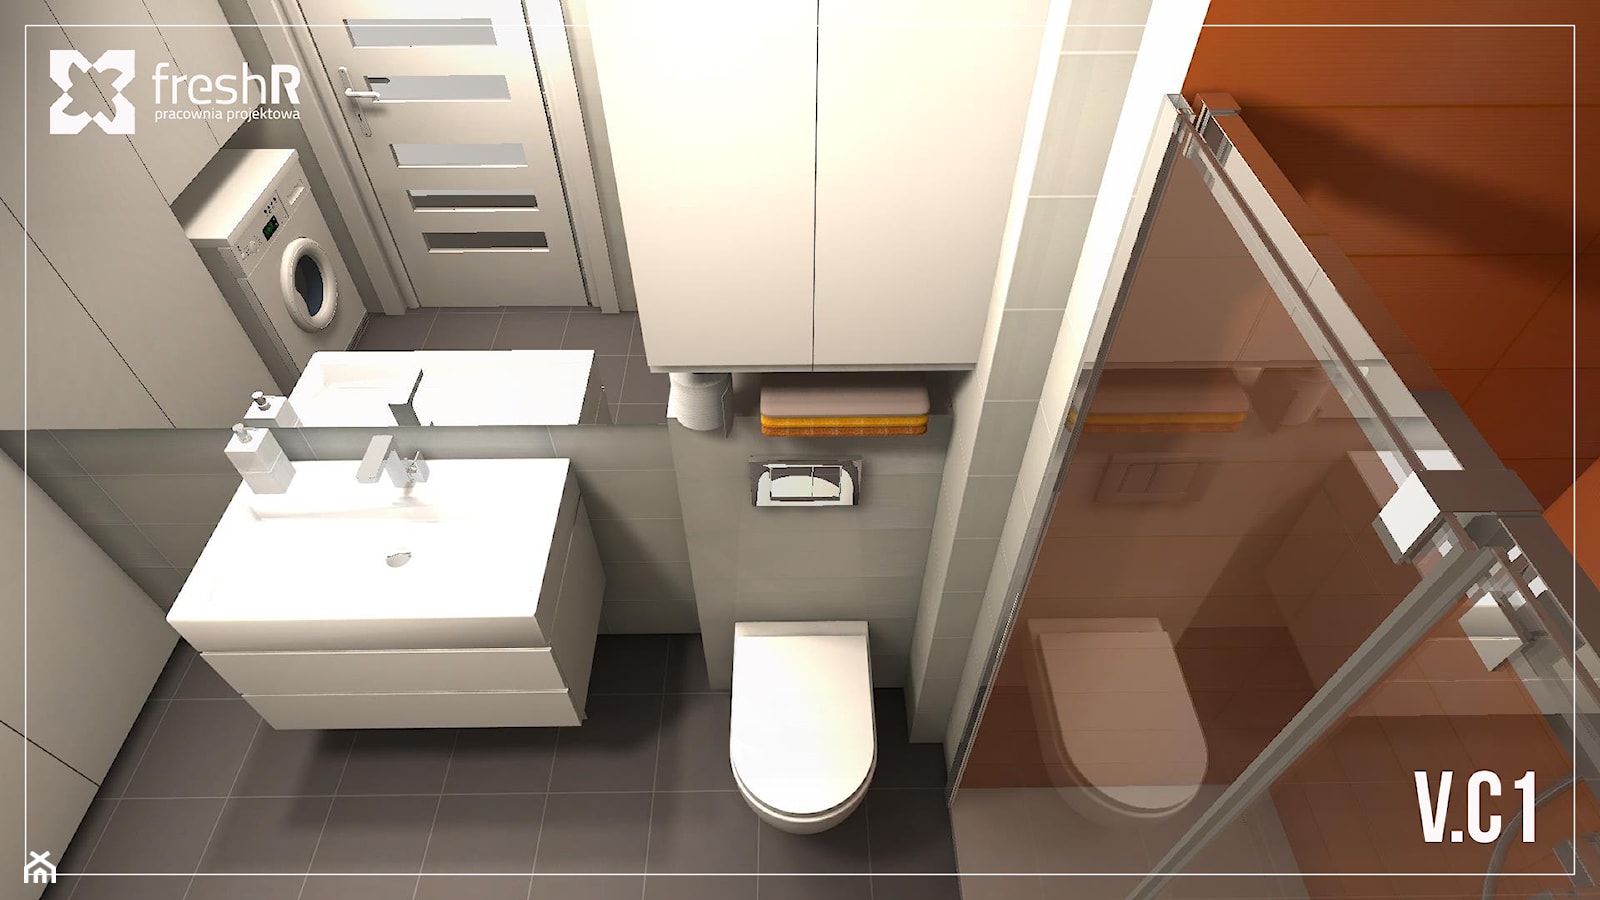 Mała łazienka w czterech odsłonach - Łazienka, styl nowoczesny - zdjęcie od freshR - pracownia projektowa - Homebook